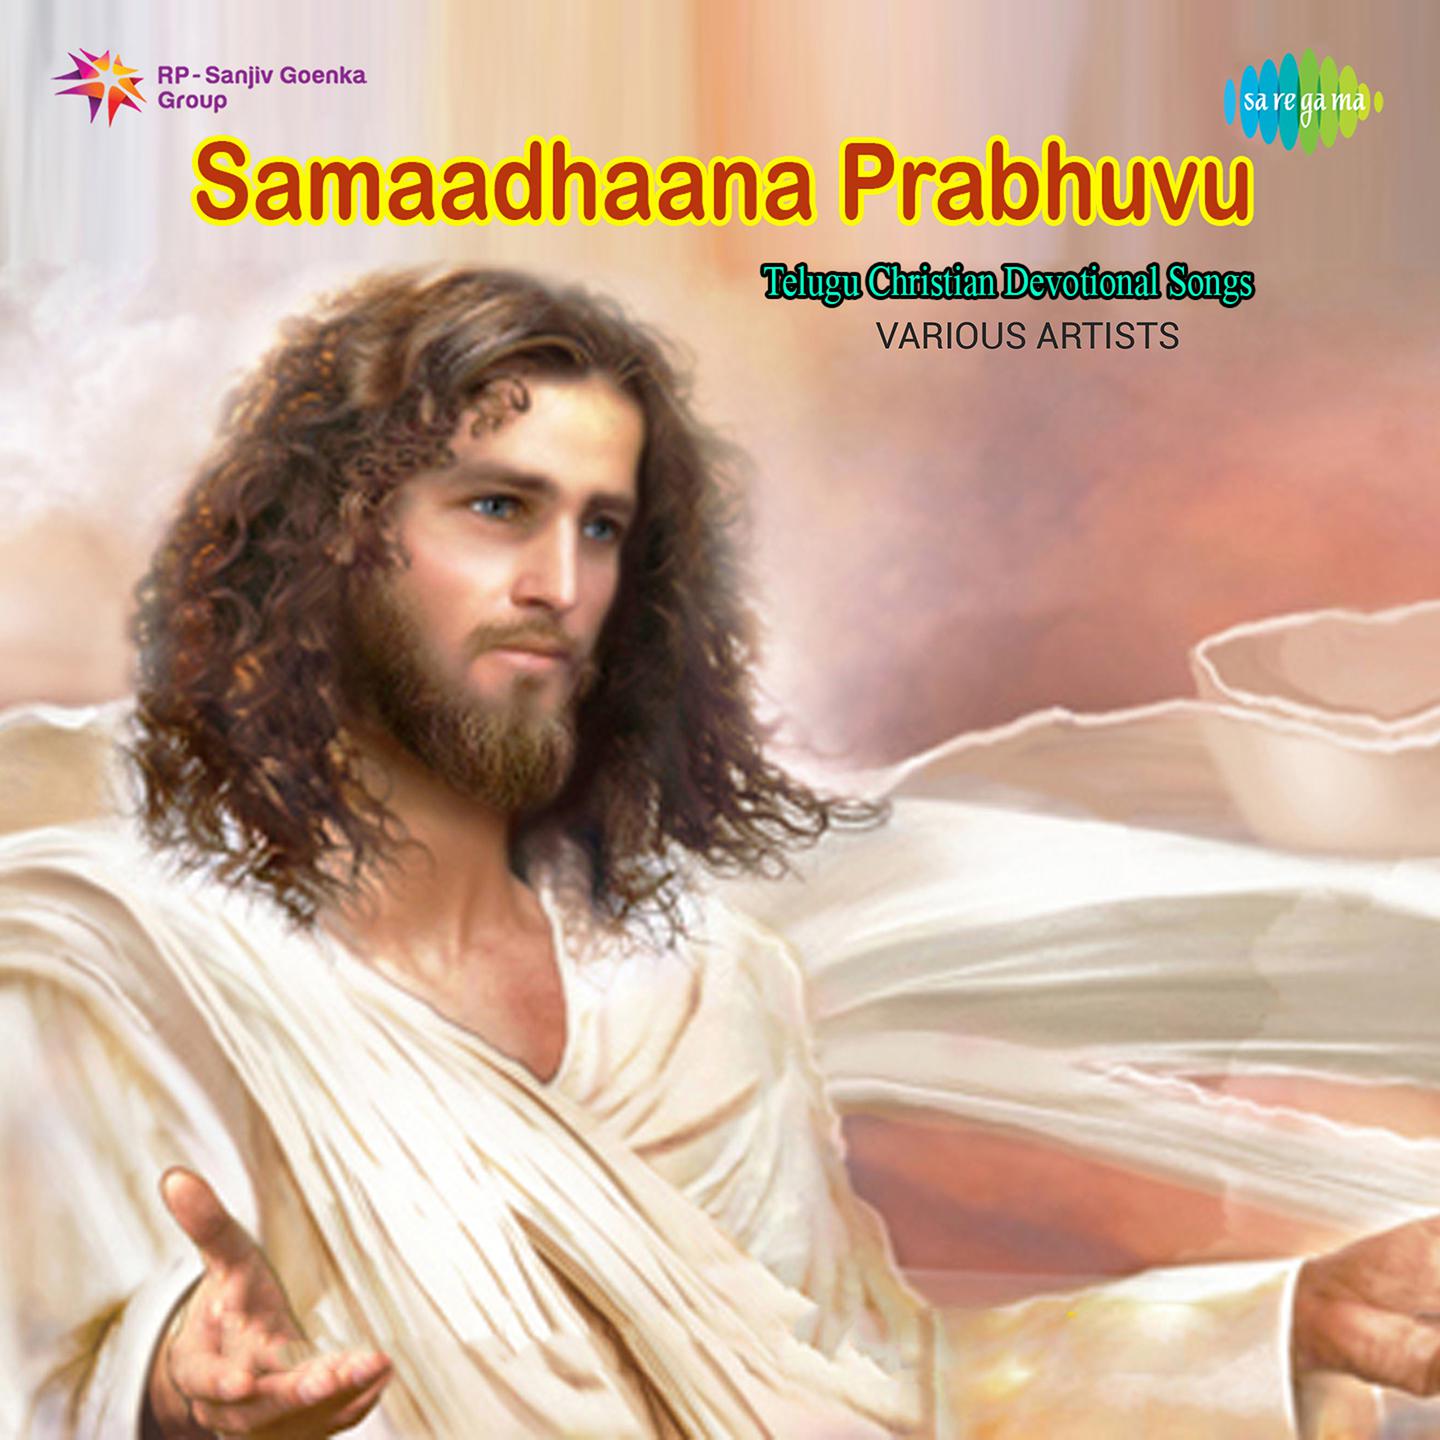 Samaadhana Prabhuvu